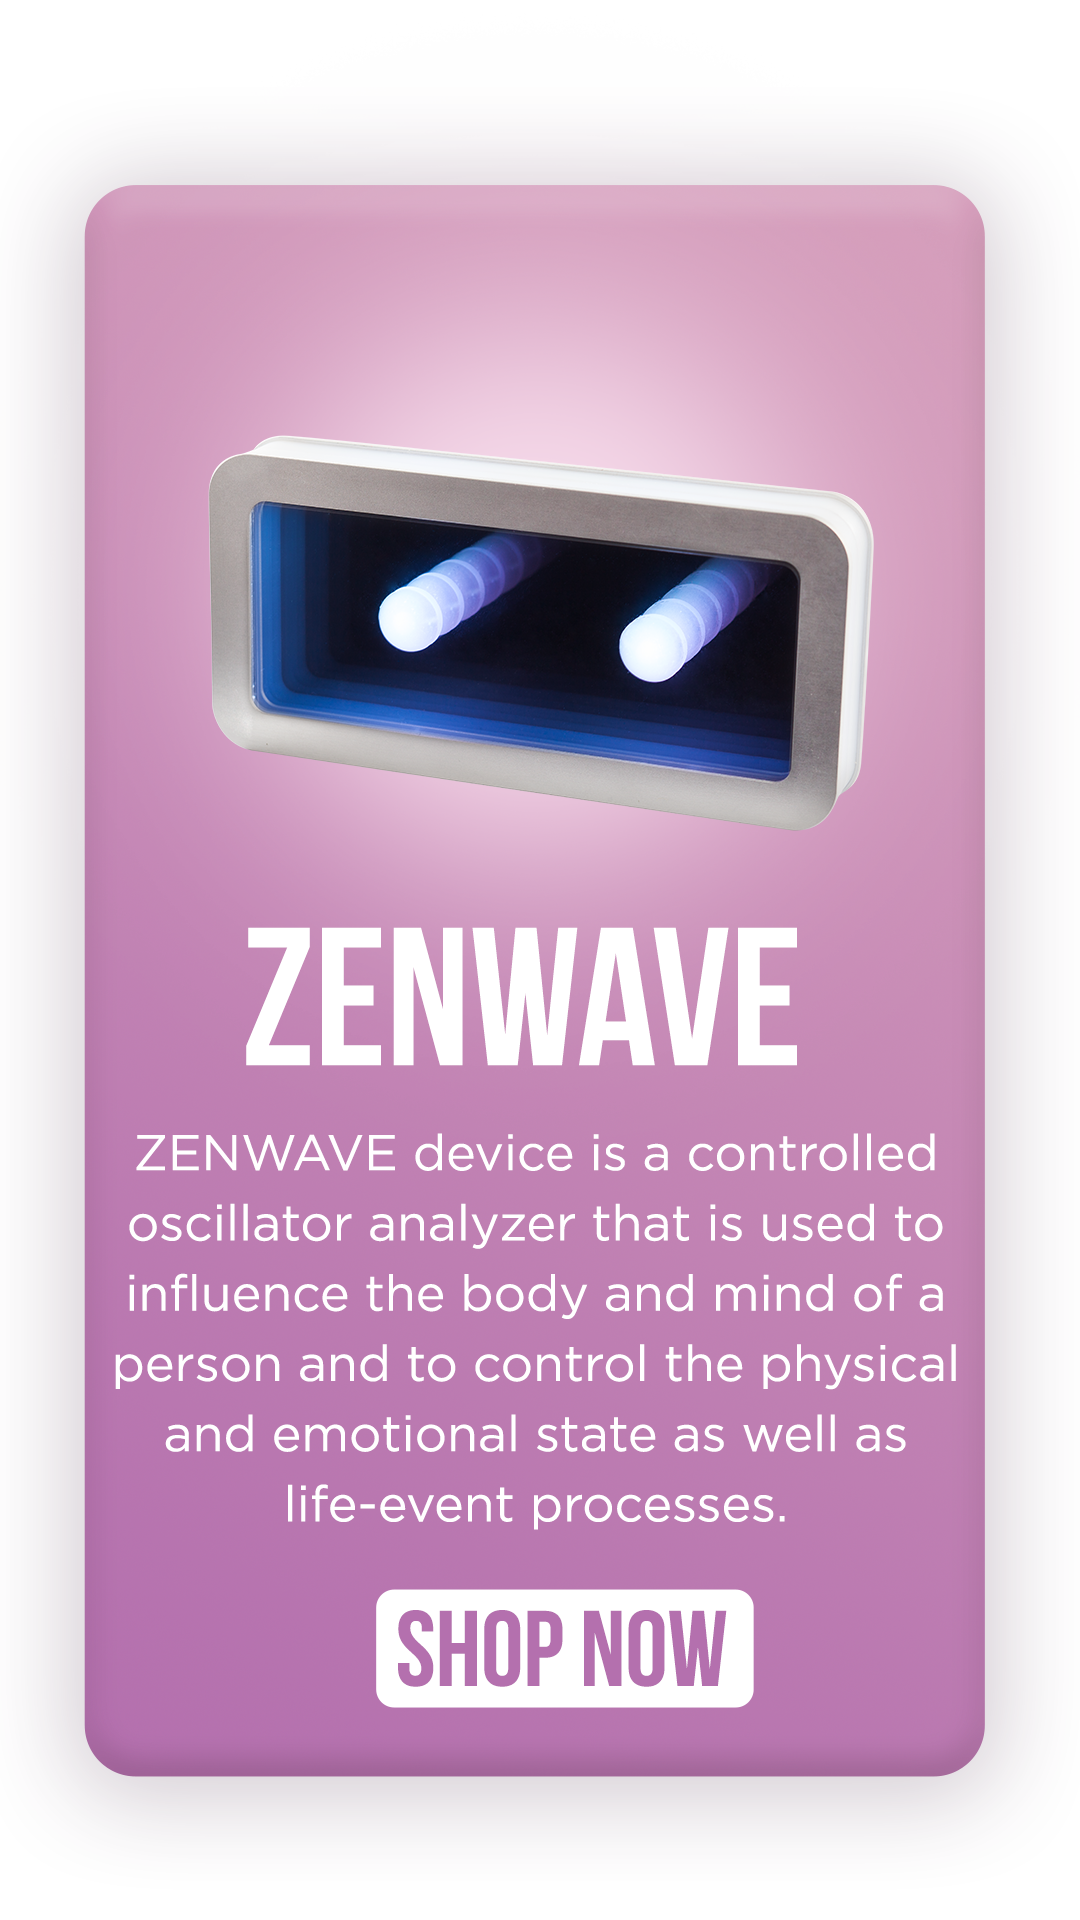 Zenwave